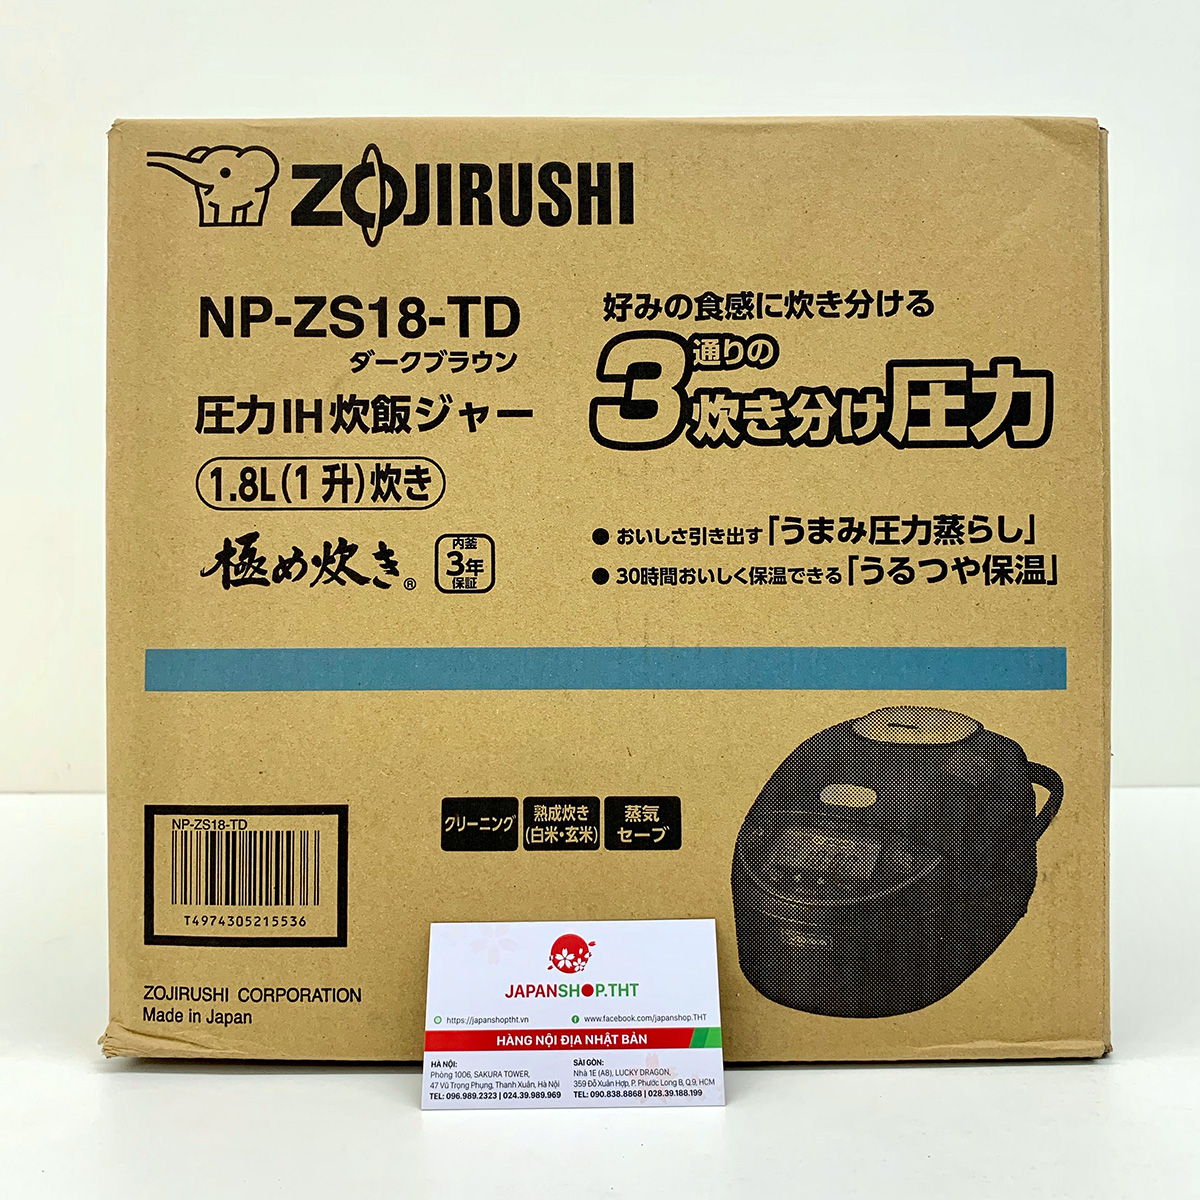 Nồi cơm điện cao tần áp suất khoá vung Nhật bản nội địa ZOJIRUSHI NP-ZS18-TD